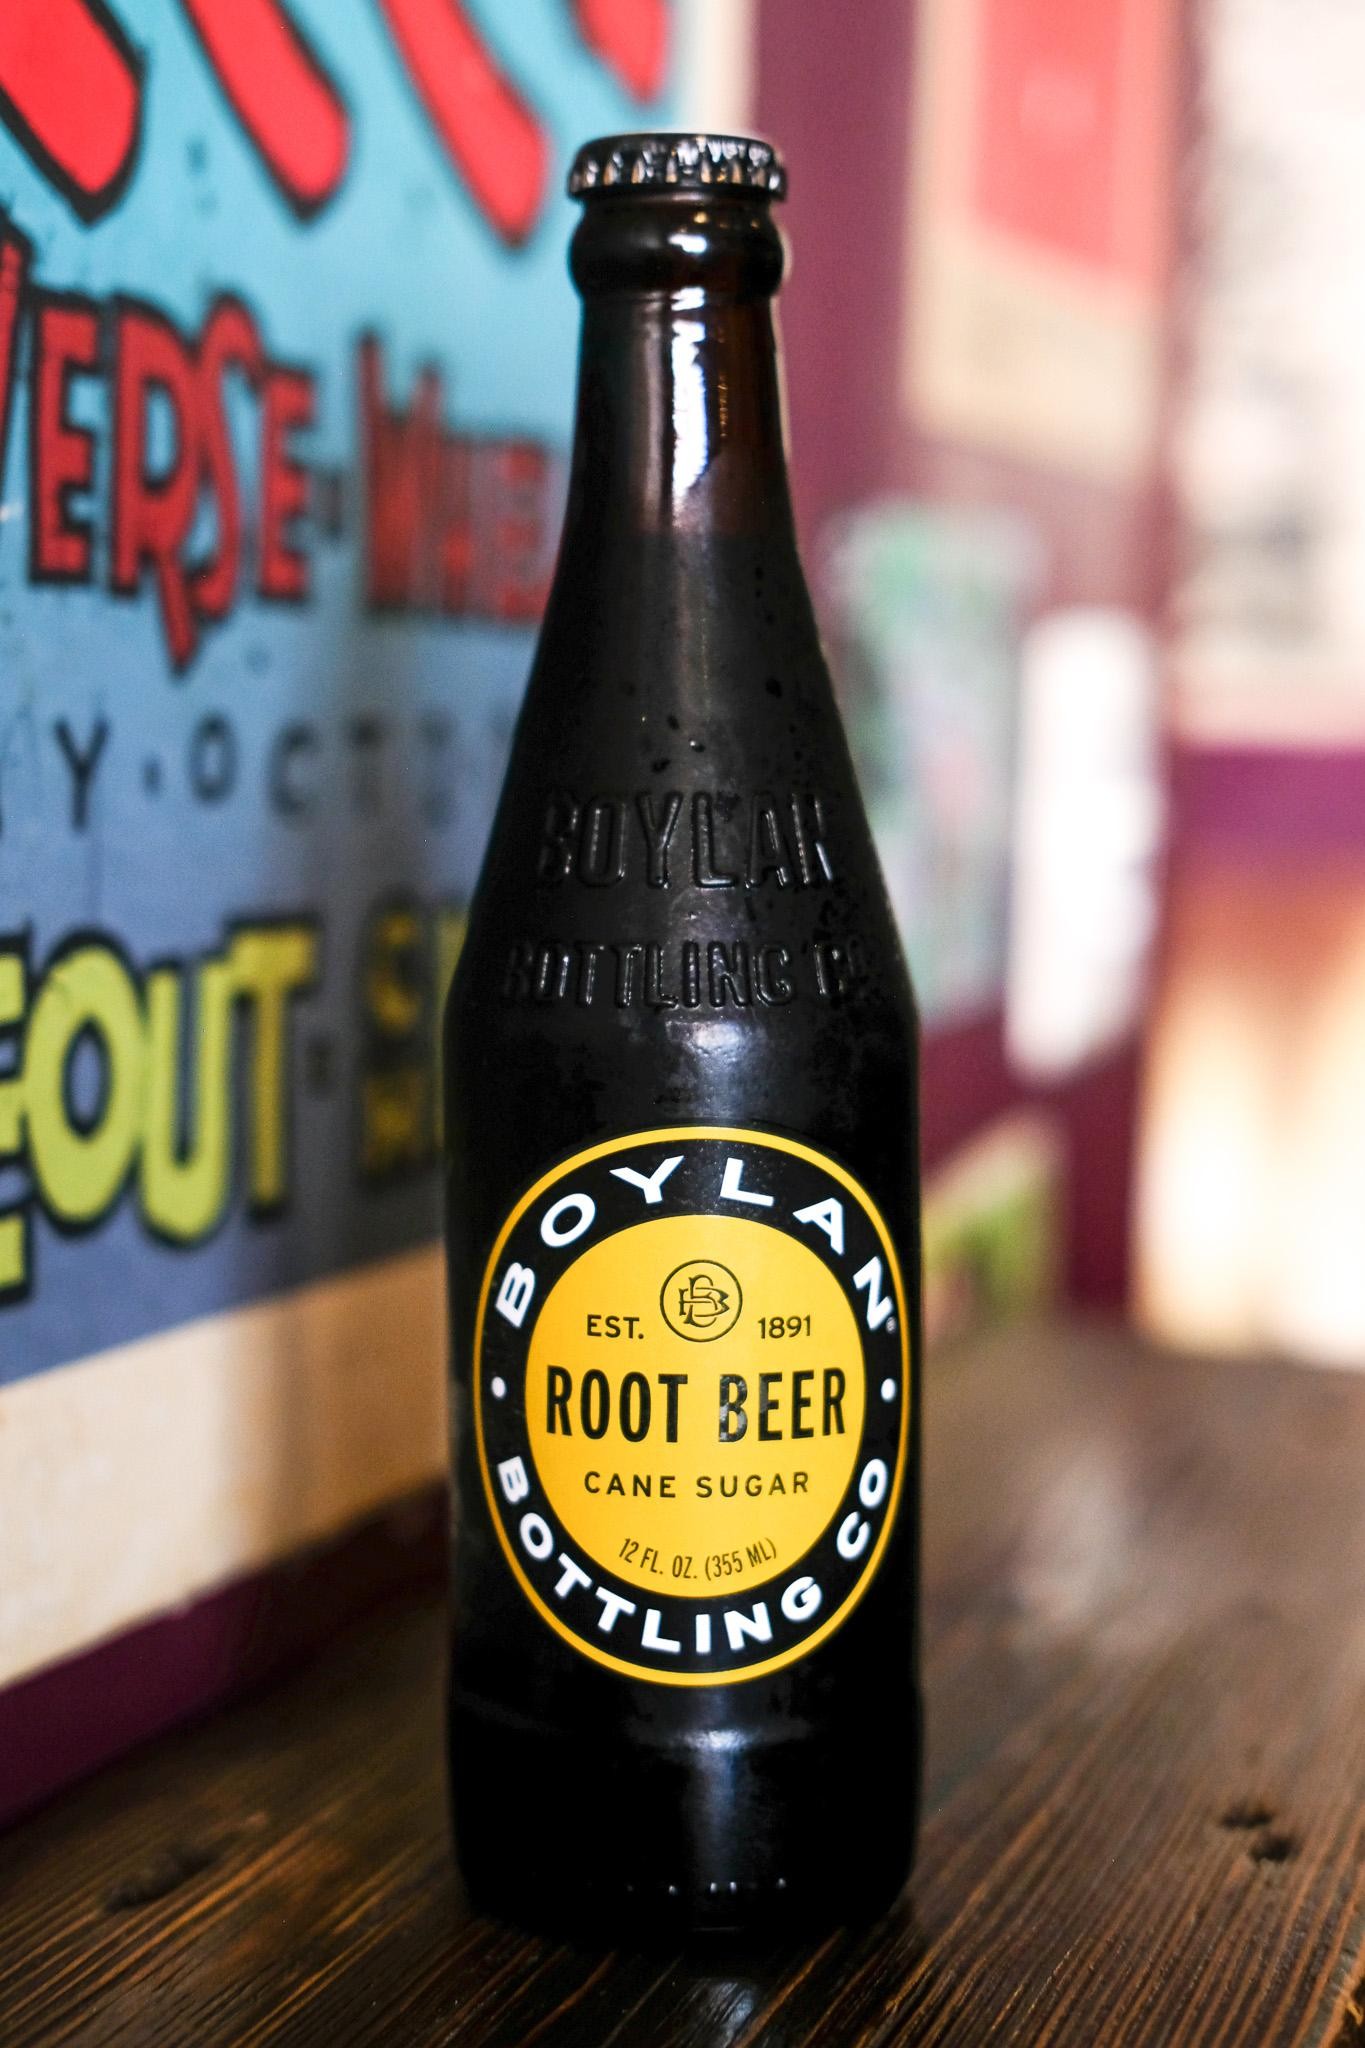 Boylan Root Beer